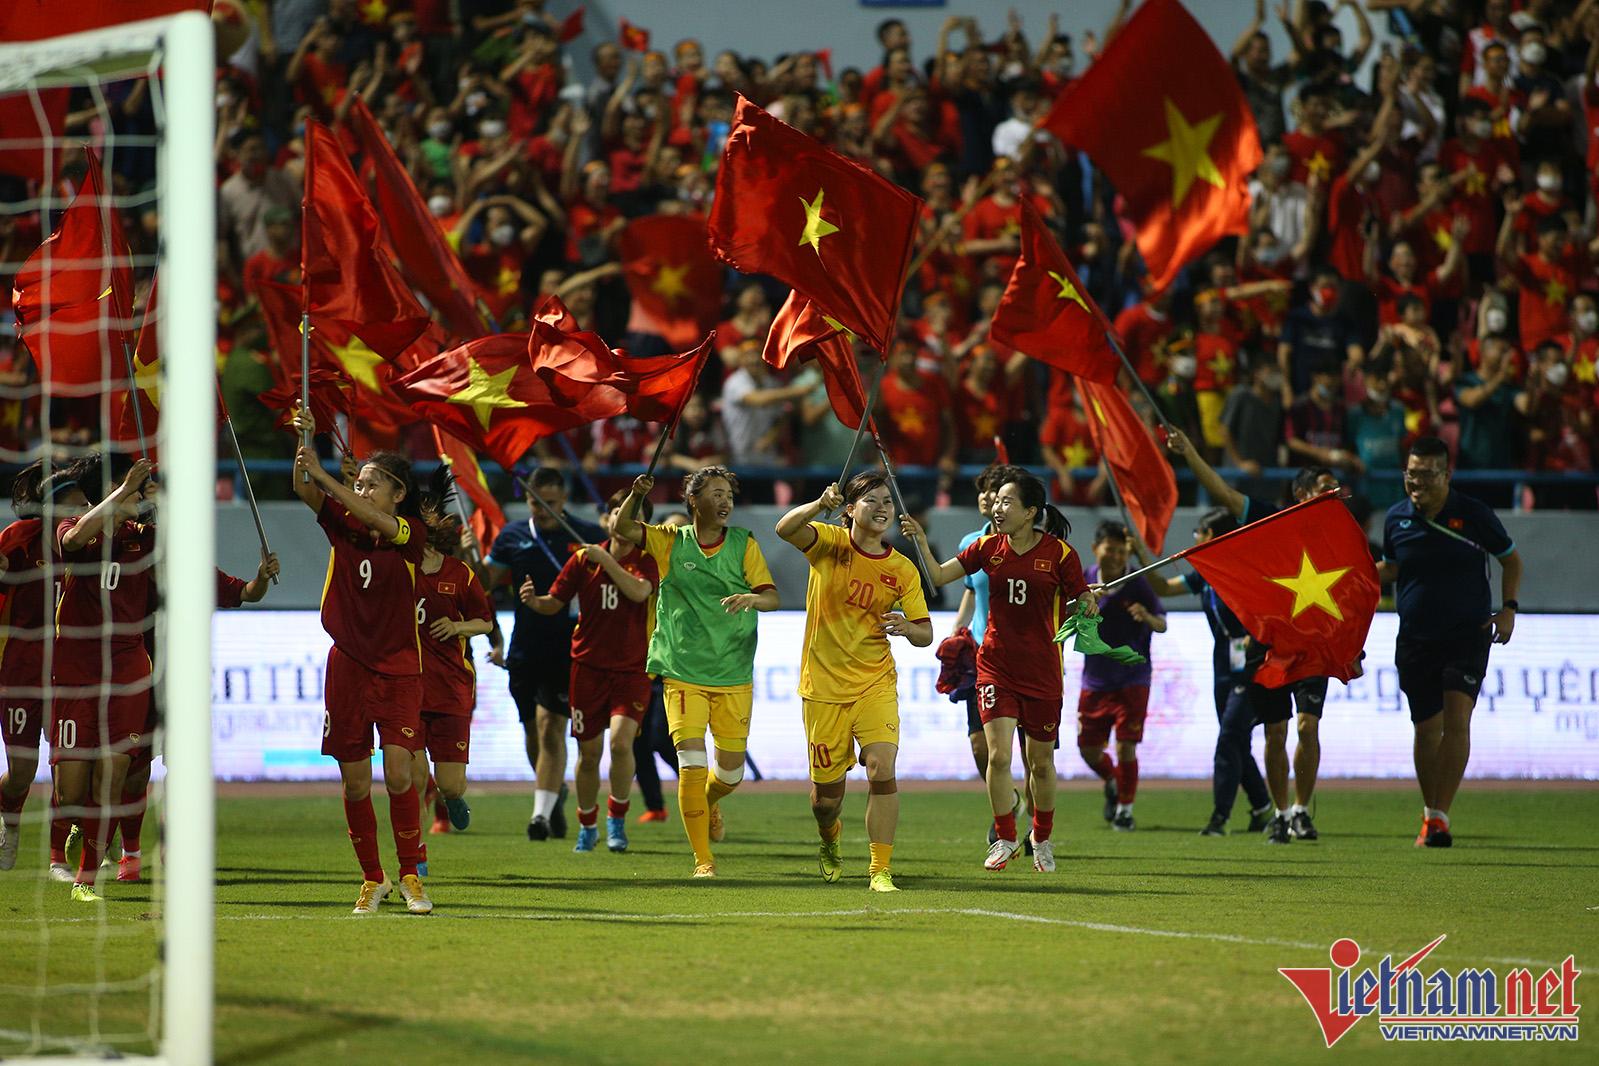 Xúc động hình ảnh cầu thủ nữ Việt Nam cắm cờ Tổ quốc trên bục nhận huy chương - Ảnh 2.